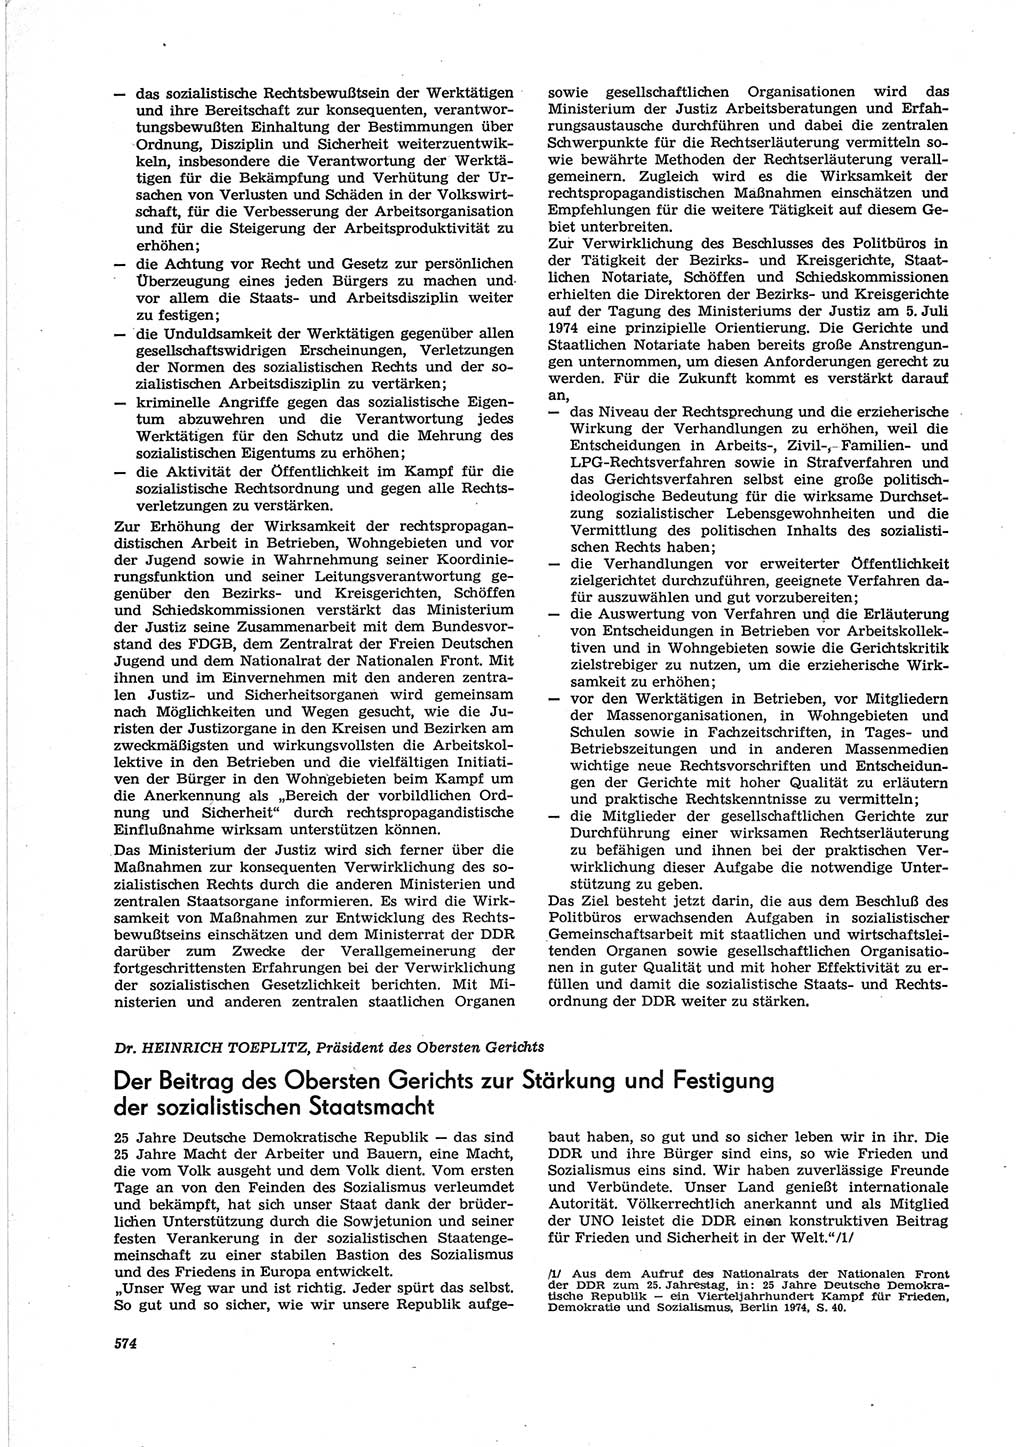 Neue Justiz (NJ), Zeitschrift für Recht und Rechtswissenschaft [Deutsche Demokratische Republik (DDR)], 28. Jahrgang 1974, Seite 574 (NJ DDR 1974, S. 574)